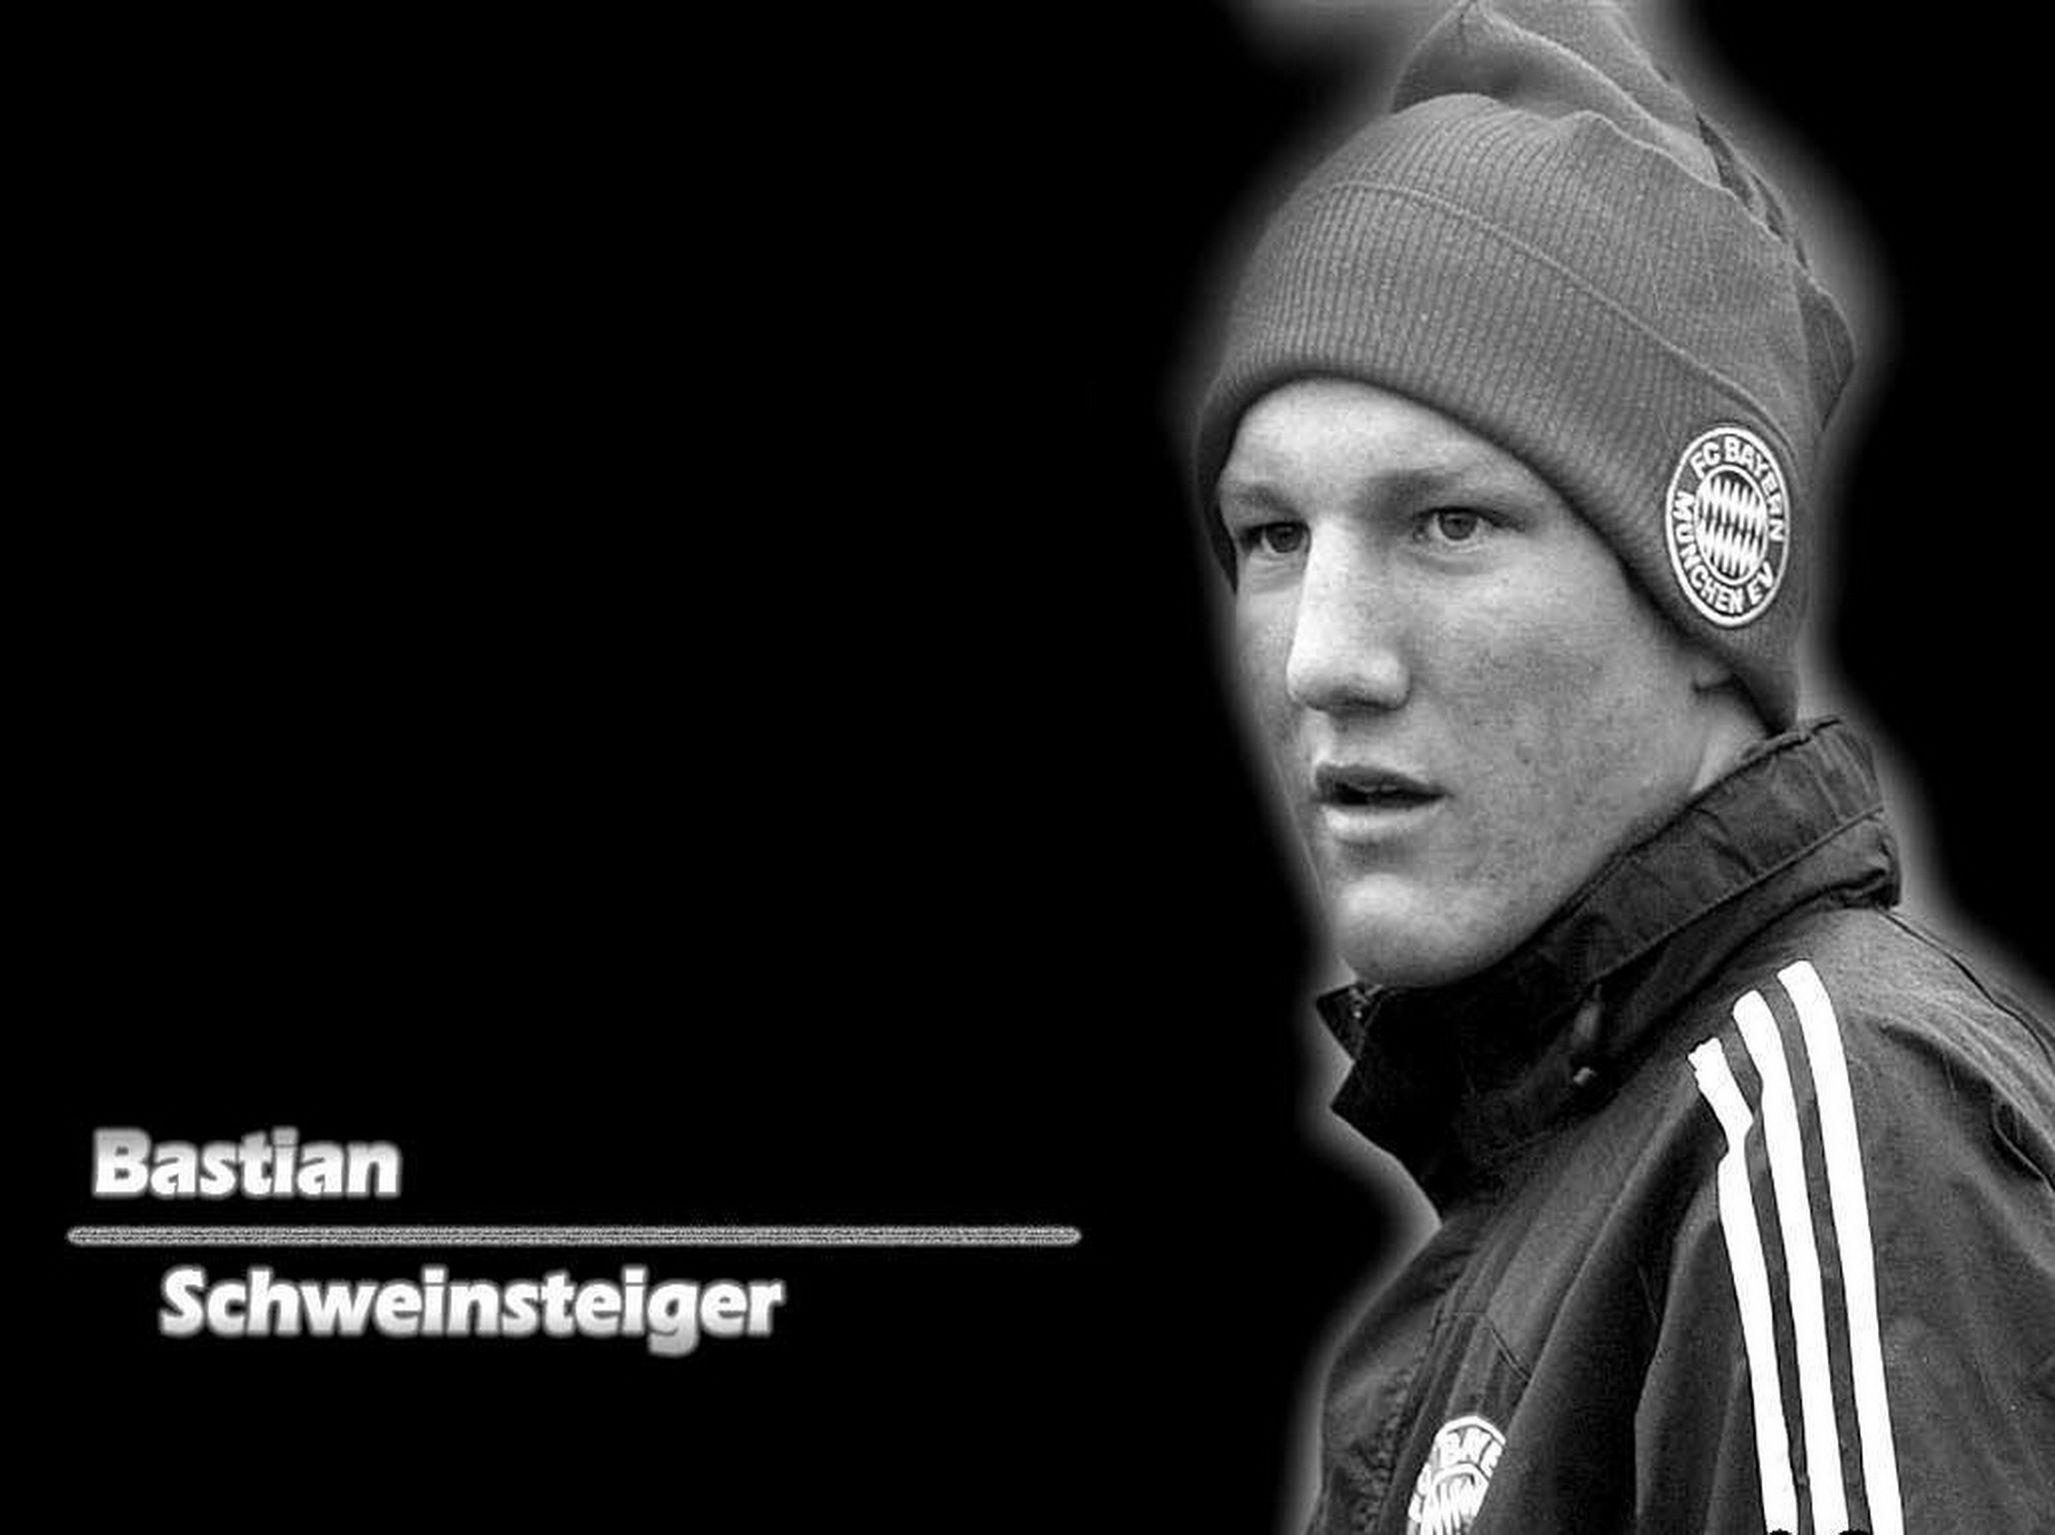 The best player of Bayern Bastian Schweinsteiger on black